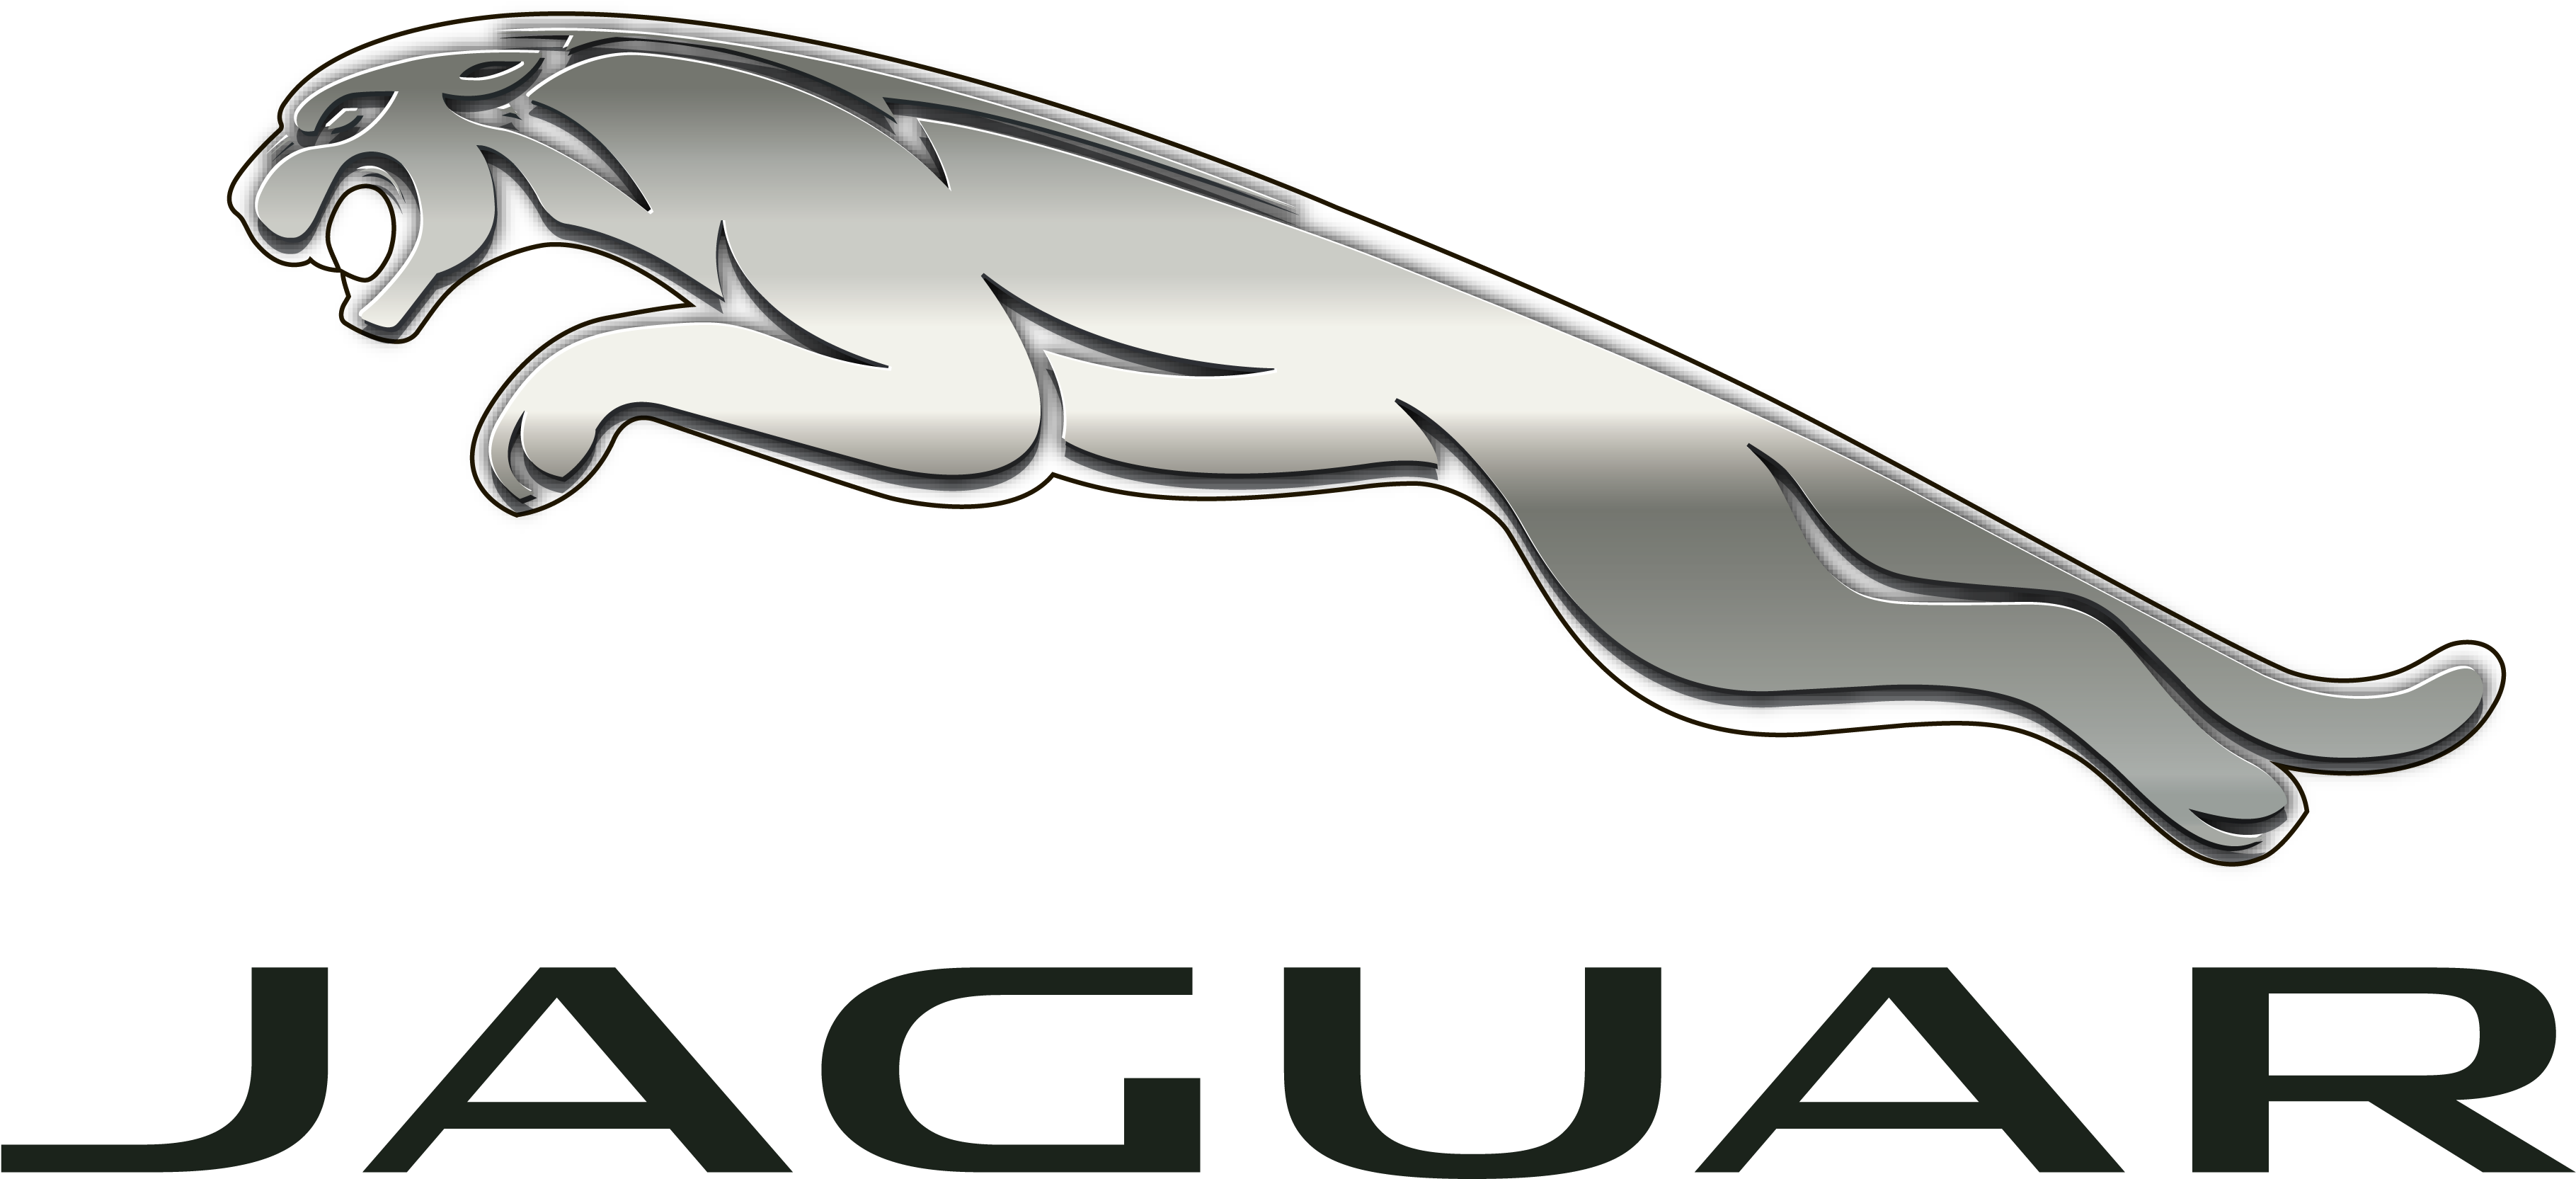 Jaguar Logo PNG Images Transparent Background | PNG Play